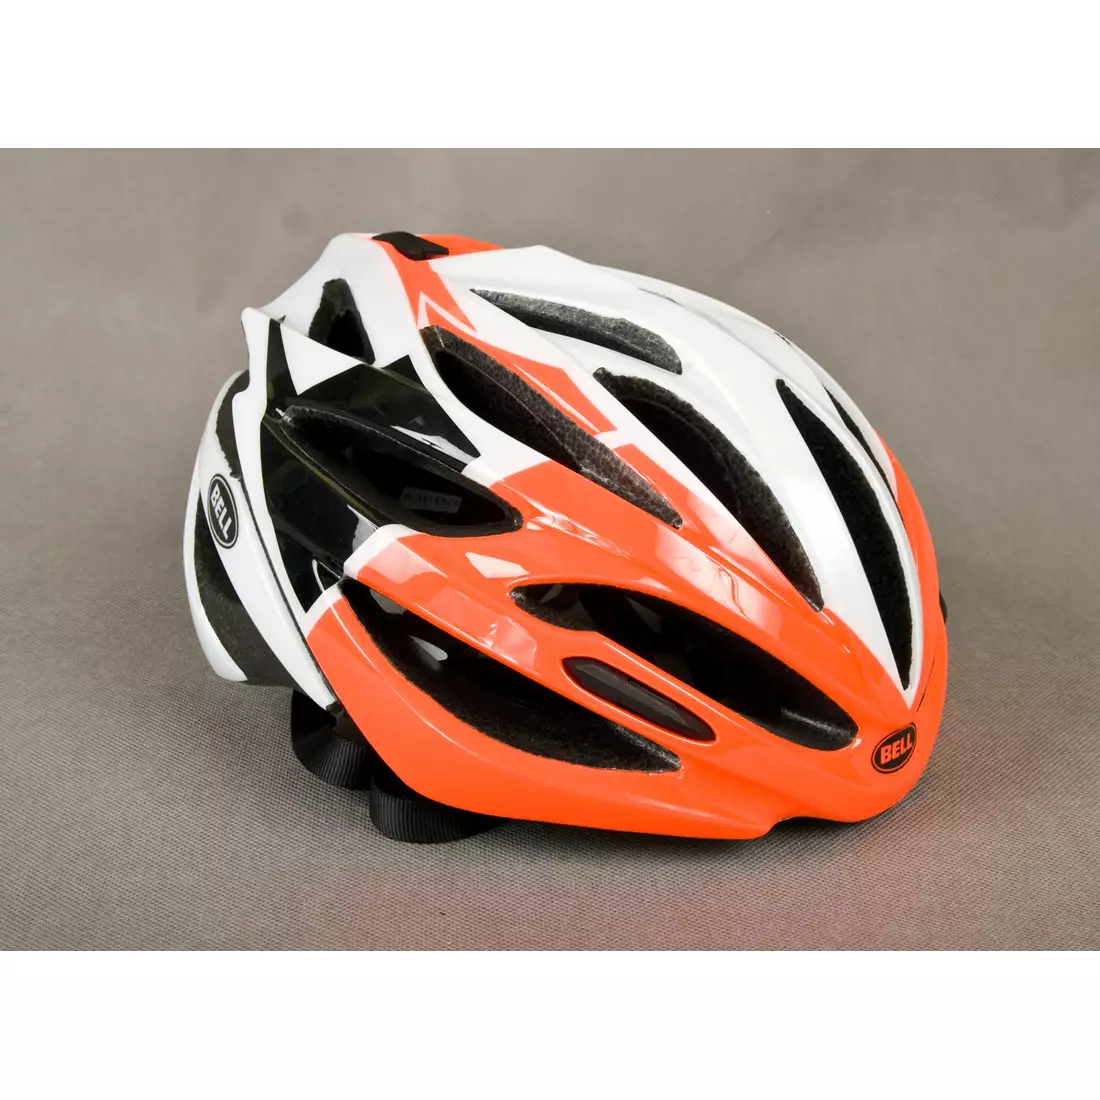 Silniční cyklistická přilba BELL ARRAY oranžovo-bílá